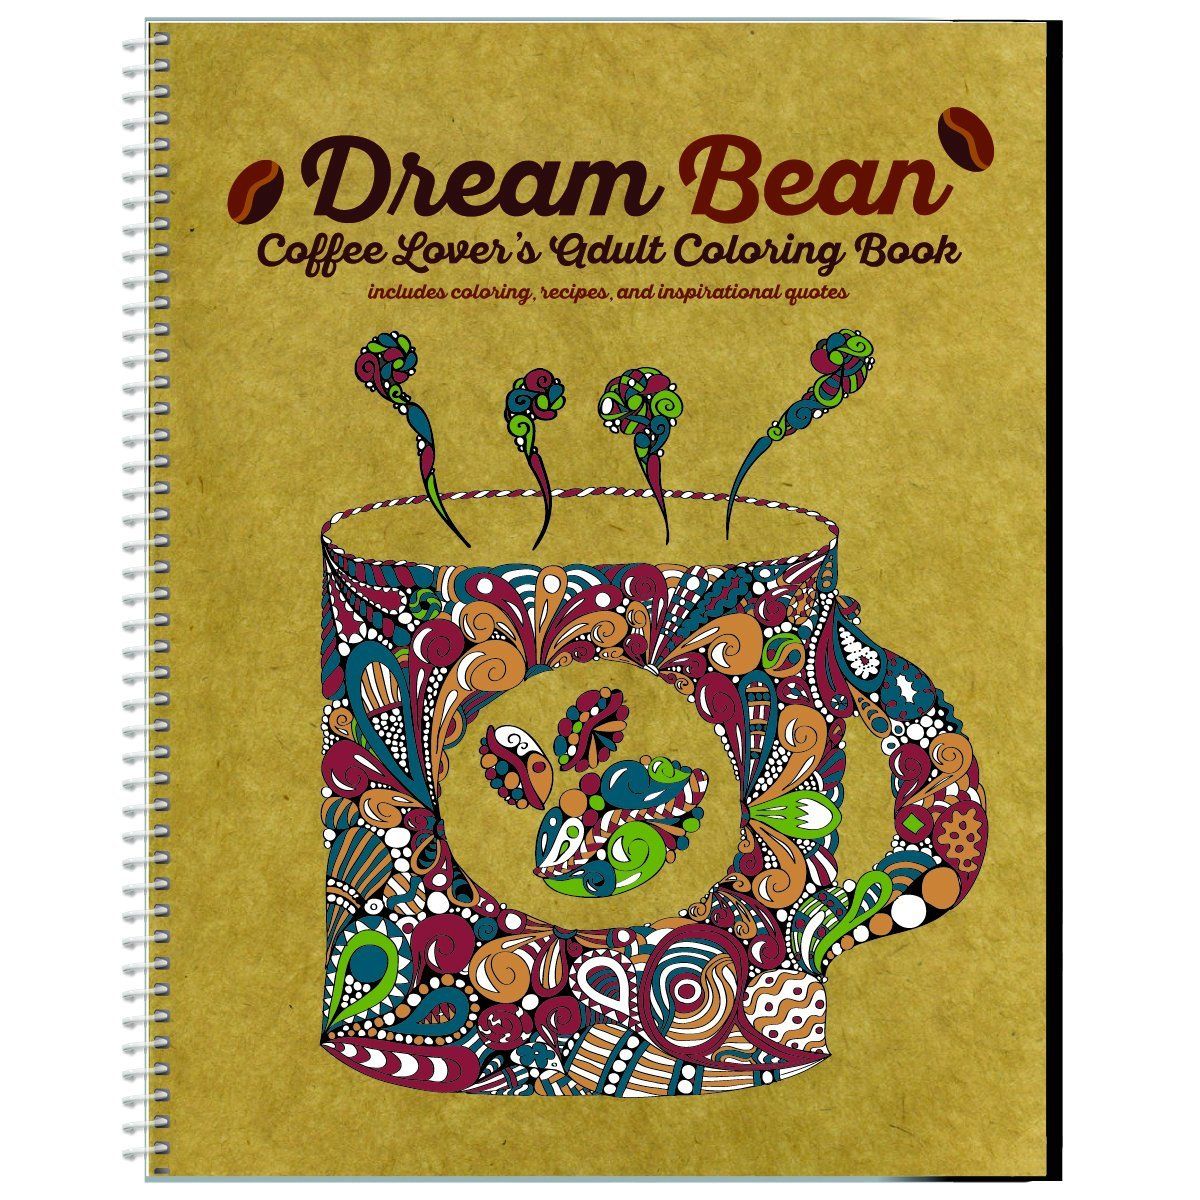 Dream Bean